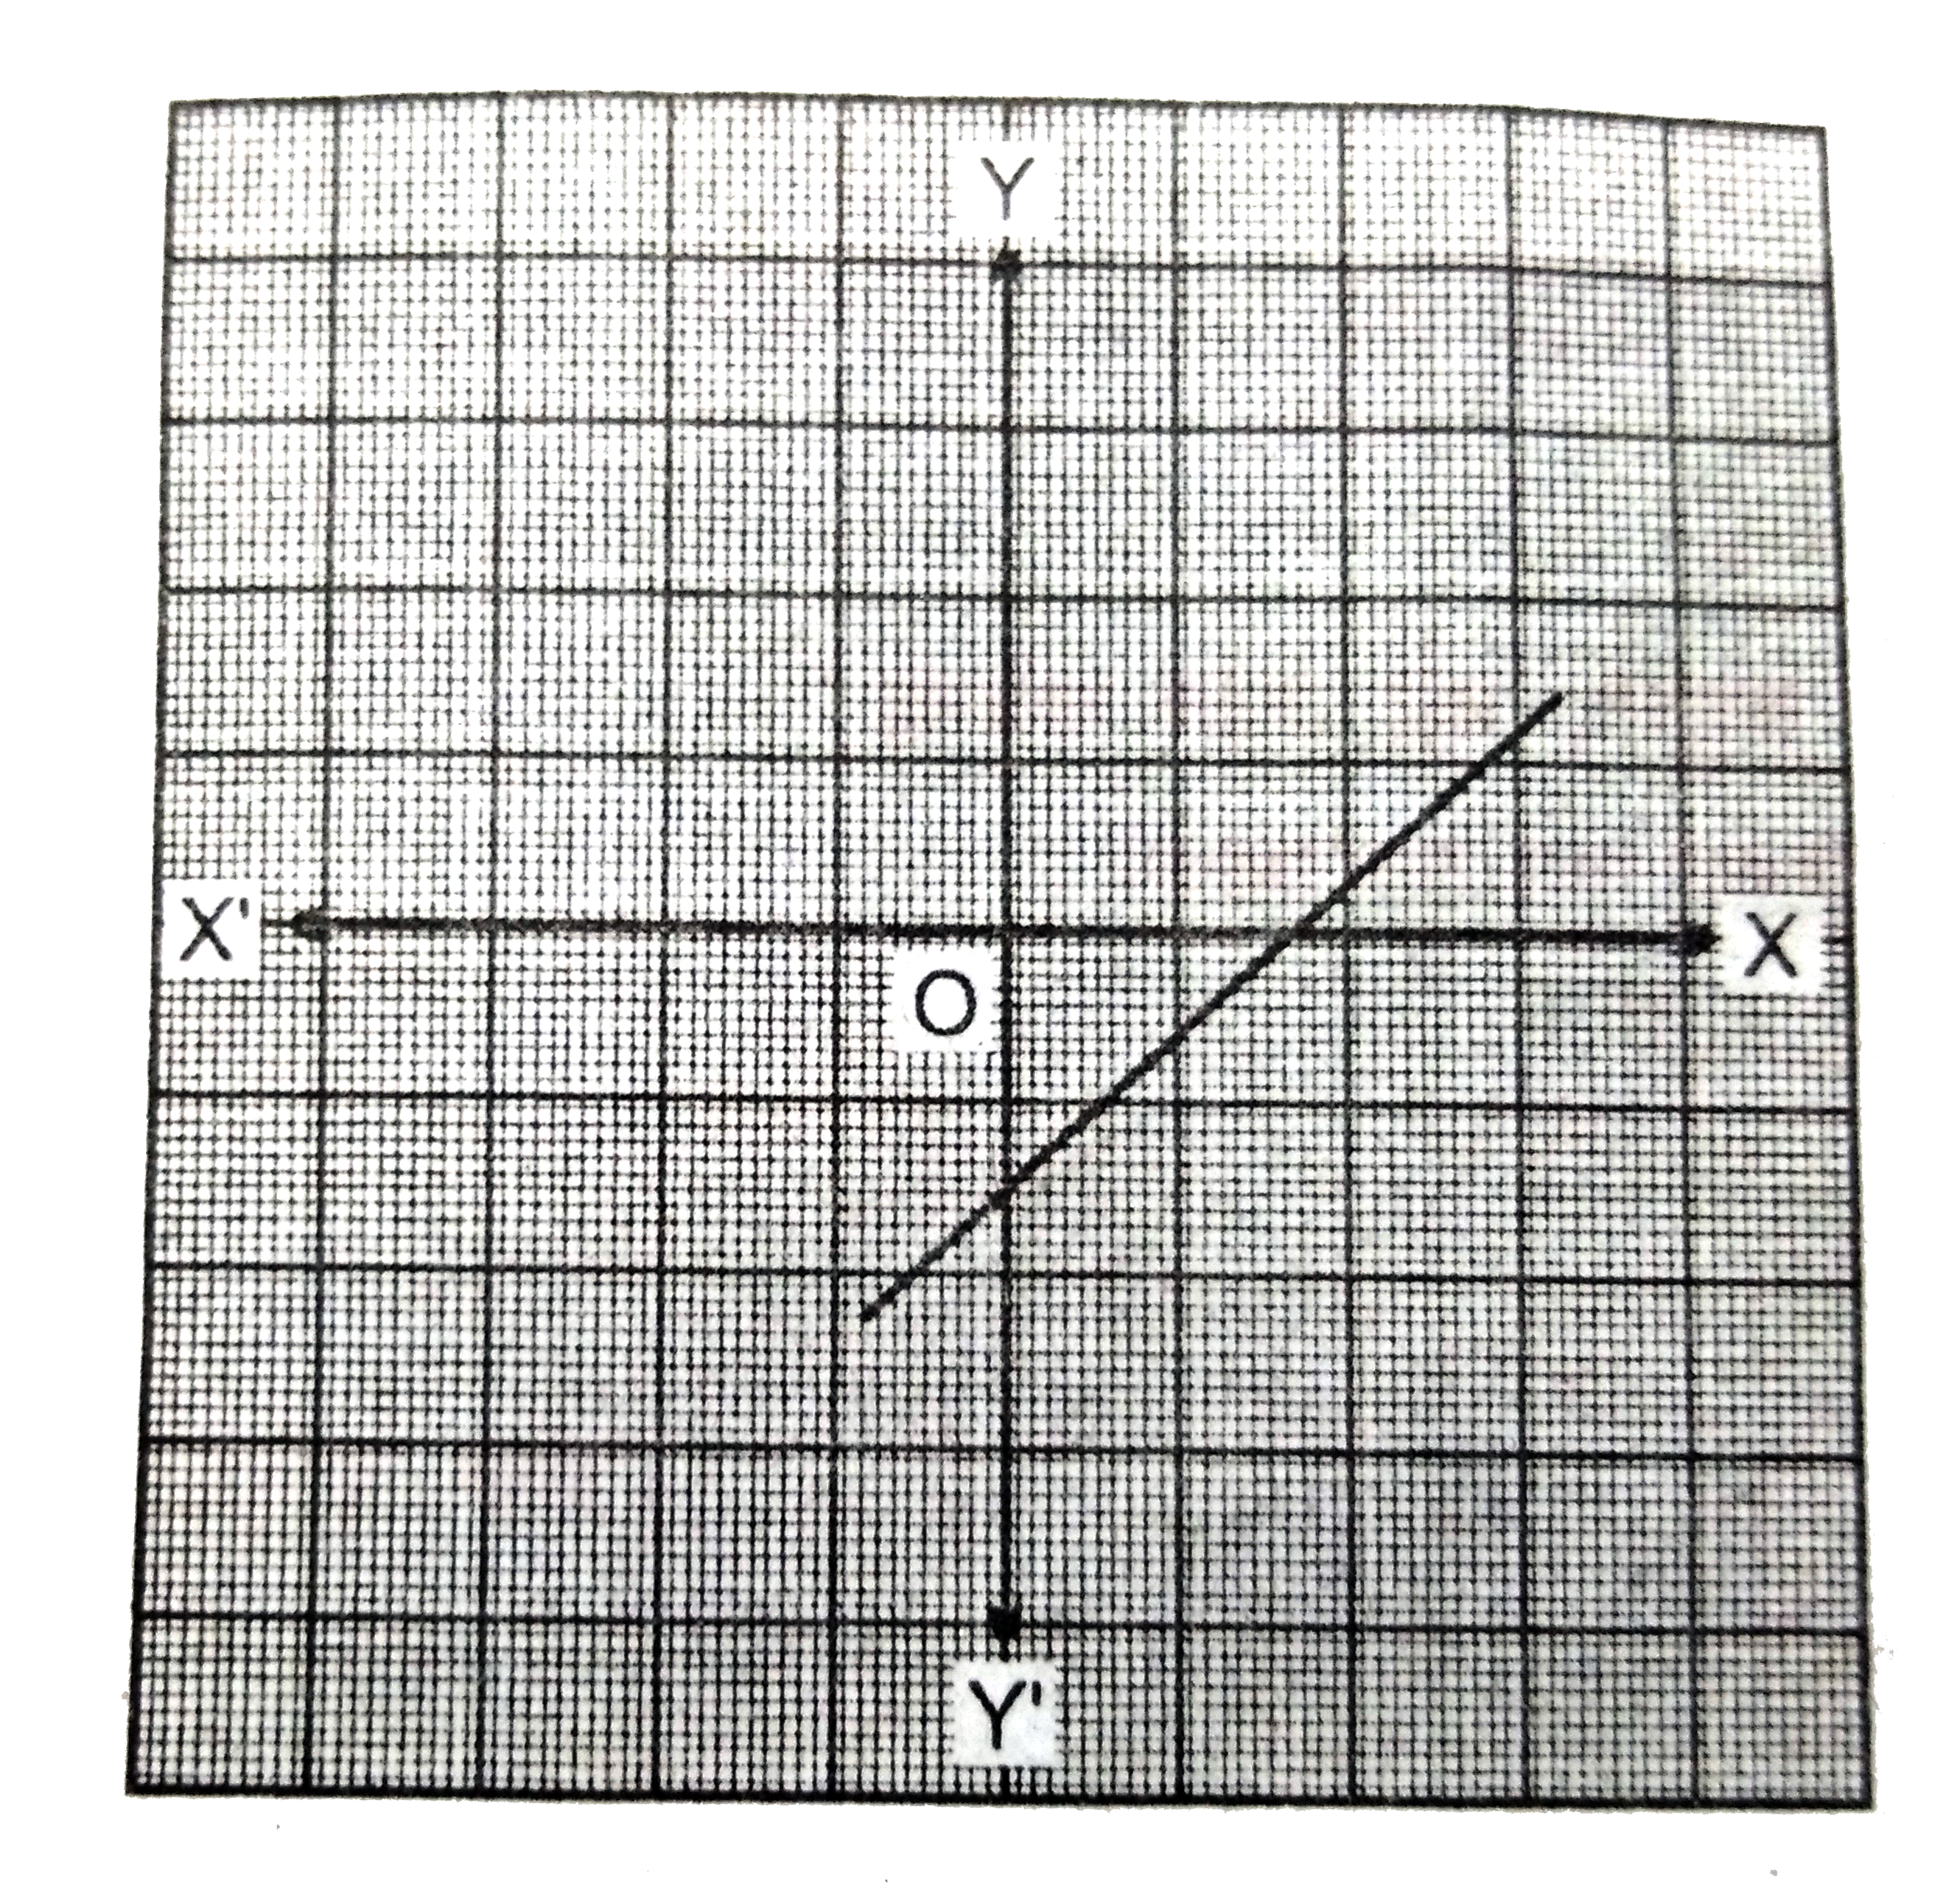 नीचे चित्र में y=p(x) के आलेख दिया गया है जहाँ p(x) एक बहुपद है | प्रत्येक स्थिति में शून्यांक की संख्या ज्ञात करें